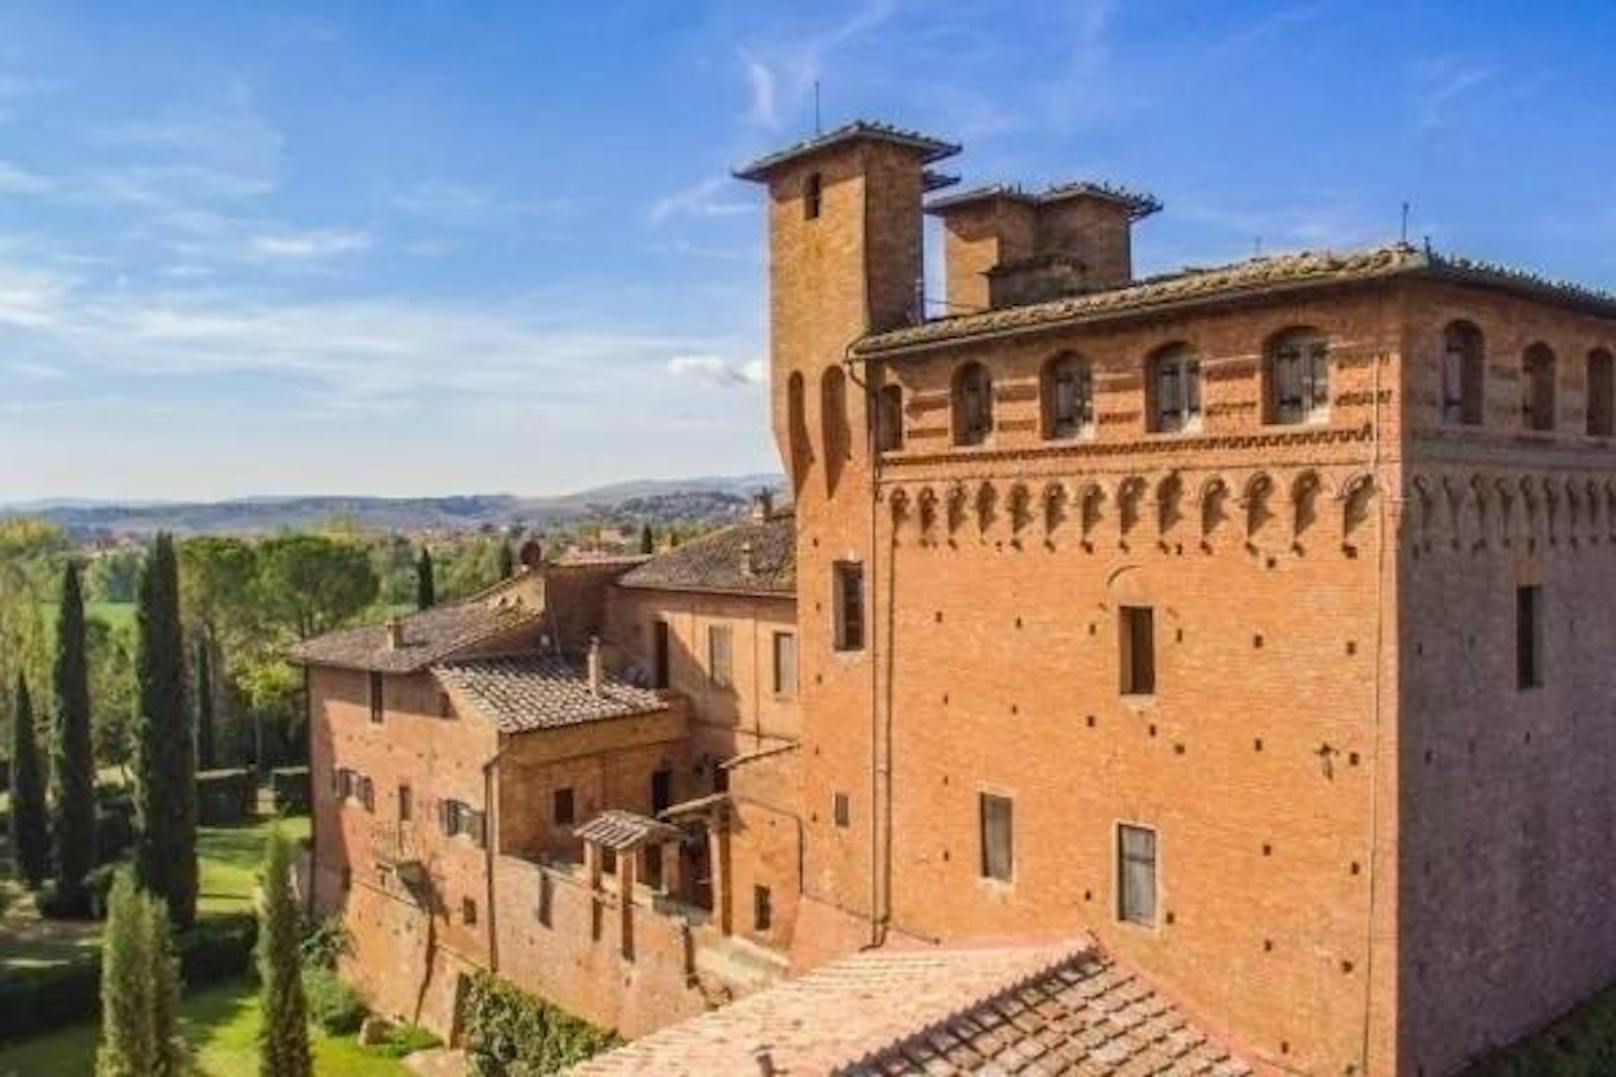 <b>Castello di San Fabiano, Monteroni d'Arbia, Italien</b>
Das Castello in der toskanischen Gemeinde liegt in der Provinz Siena. Besucher bekommen von der Gastgeberfamilie ein hausgemachtes Frühstück.